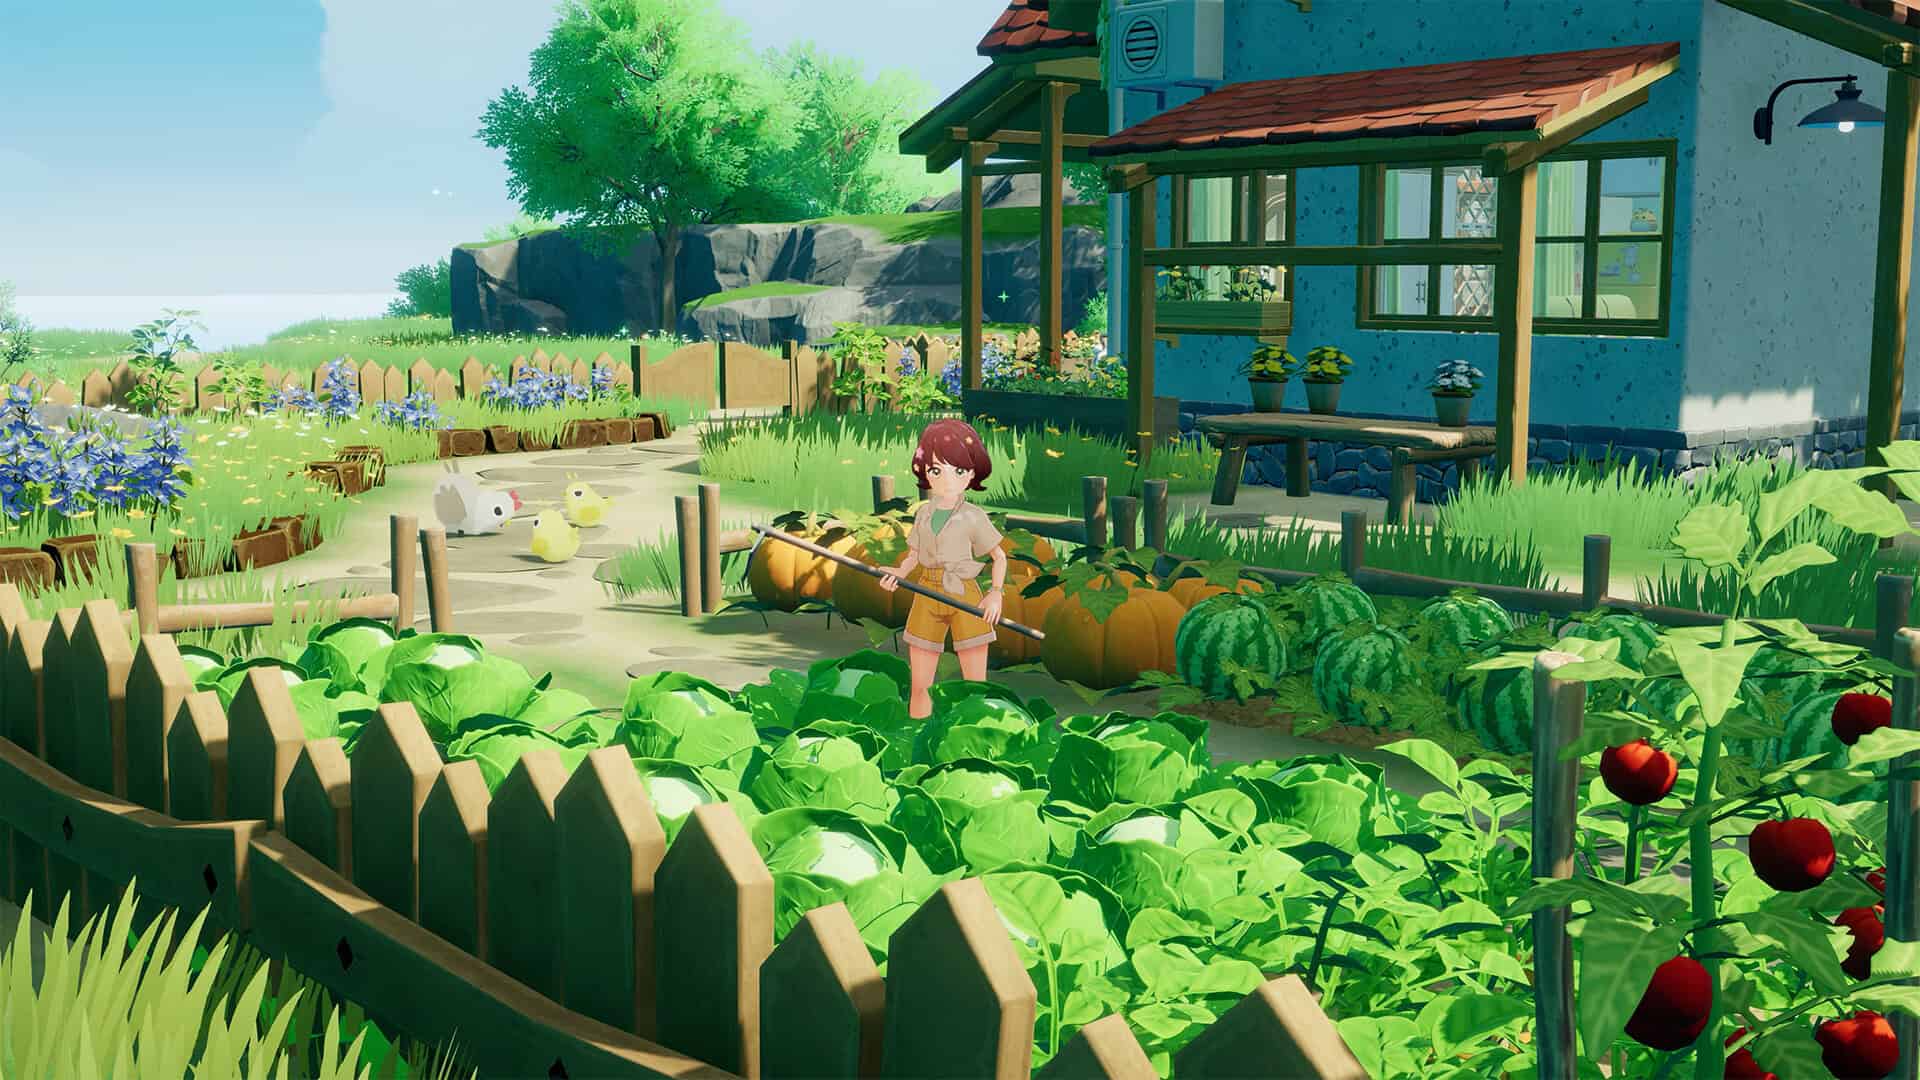 เปิดตัว Starsand Island เกมปลูกผักทำฟาร์ม ใช้ชีวิตสโลว์ไลฟ์ แถมมีการ์ตูนให้ดูจริง ๆ ภายในเกม